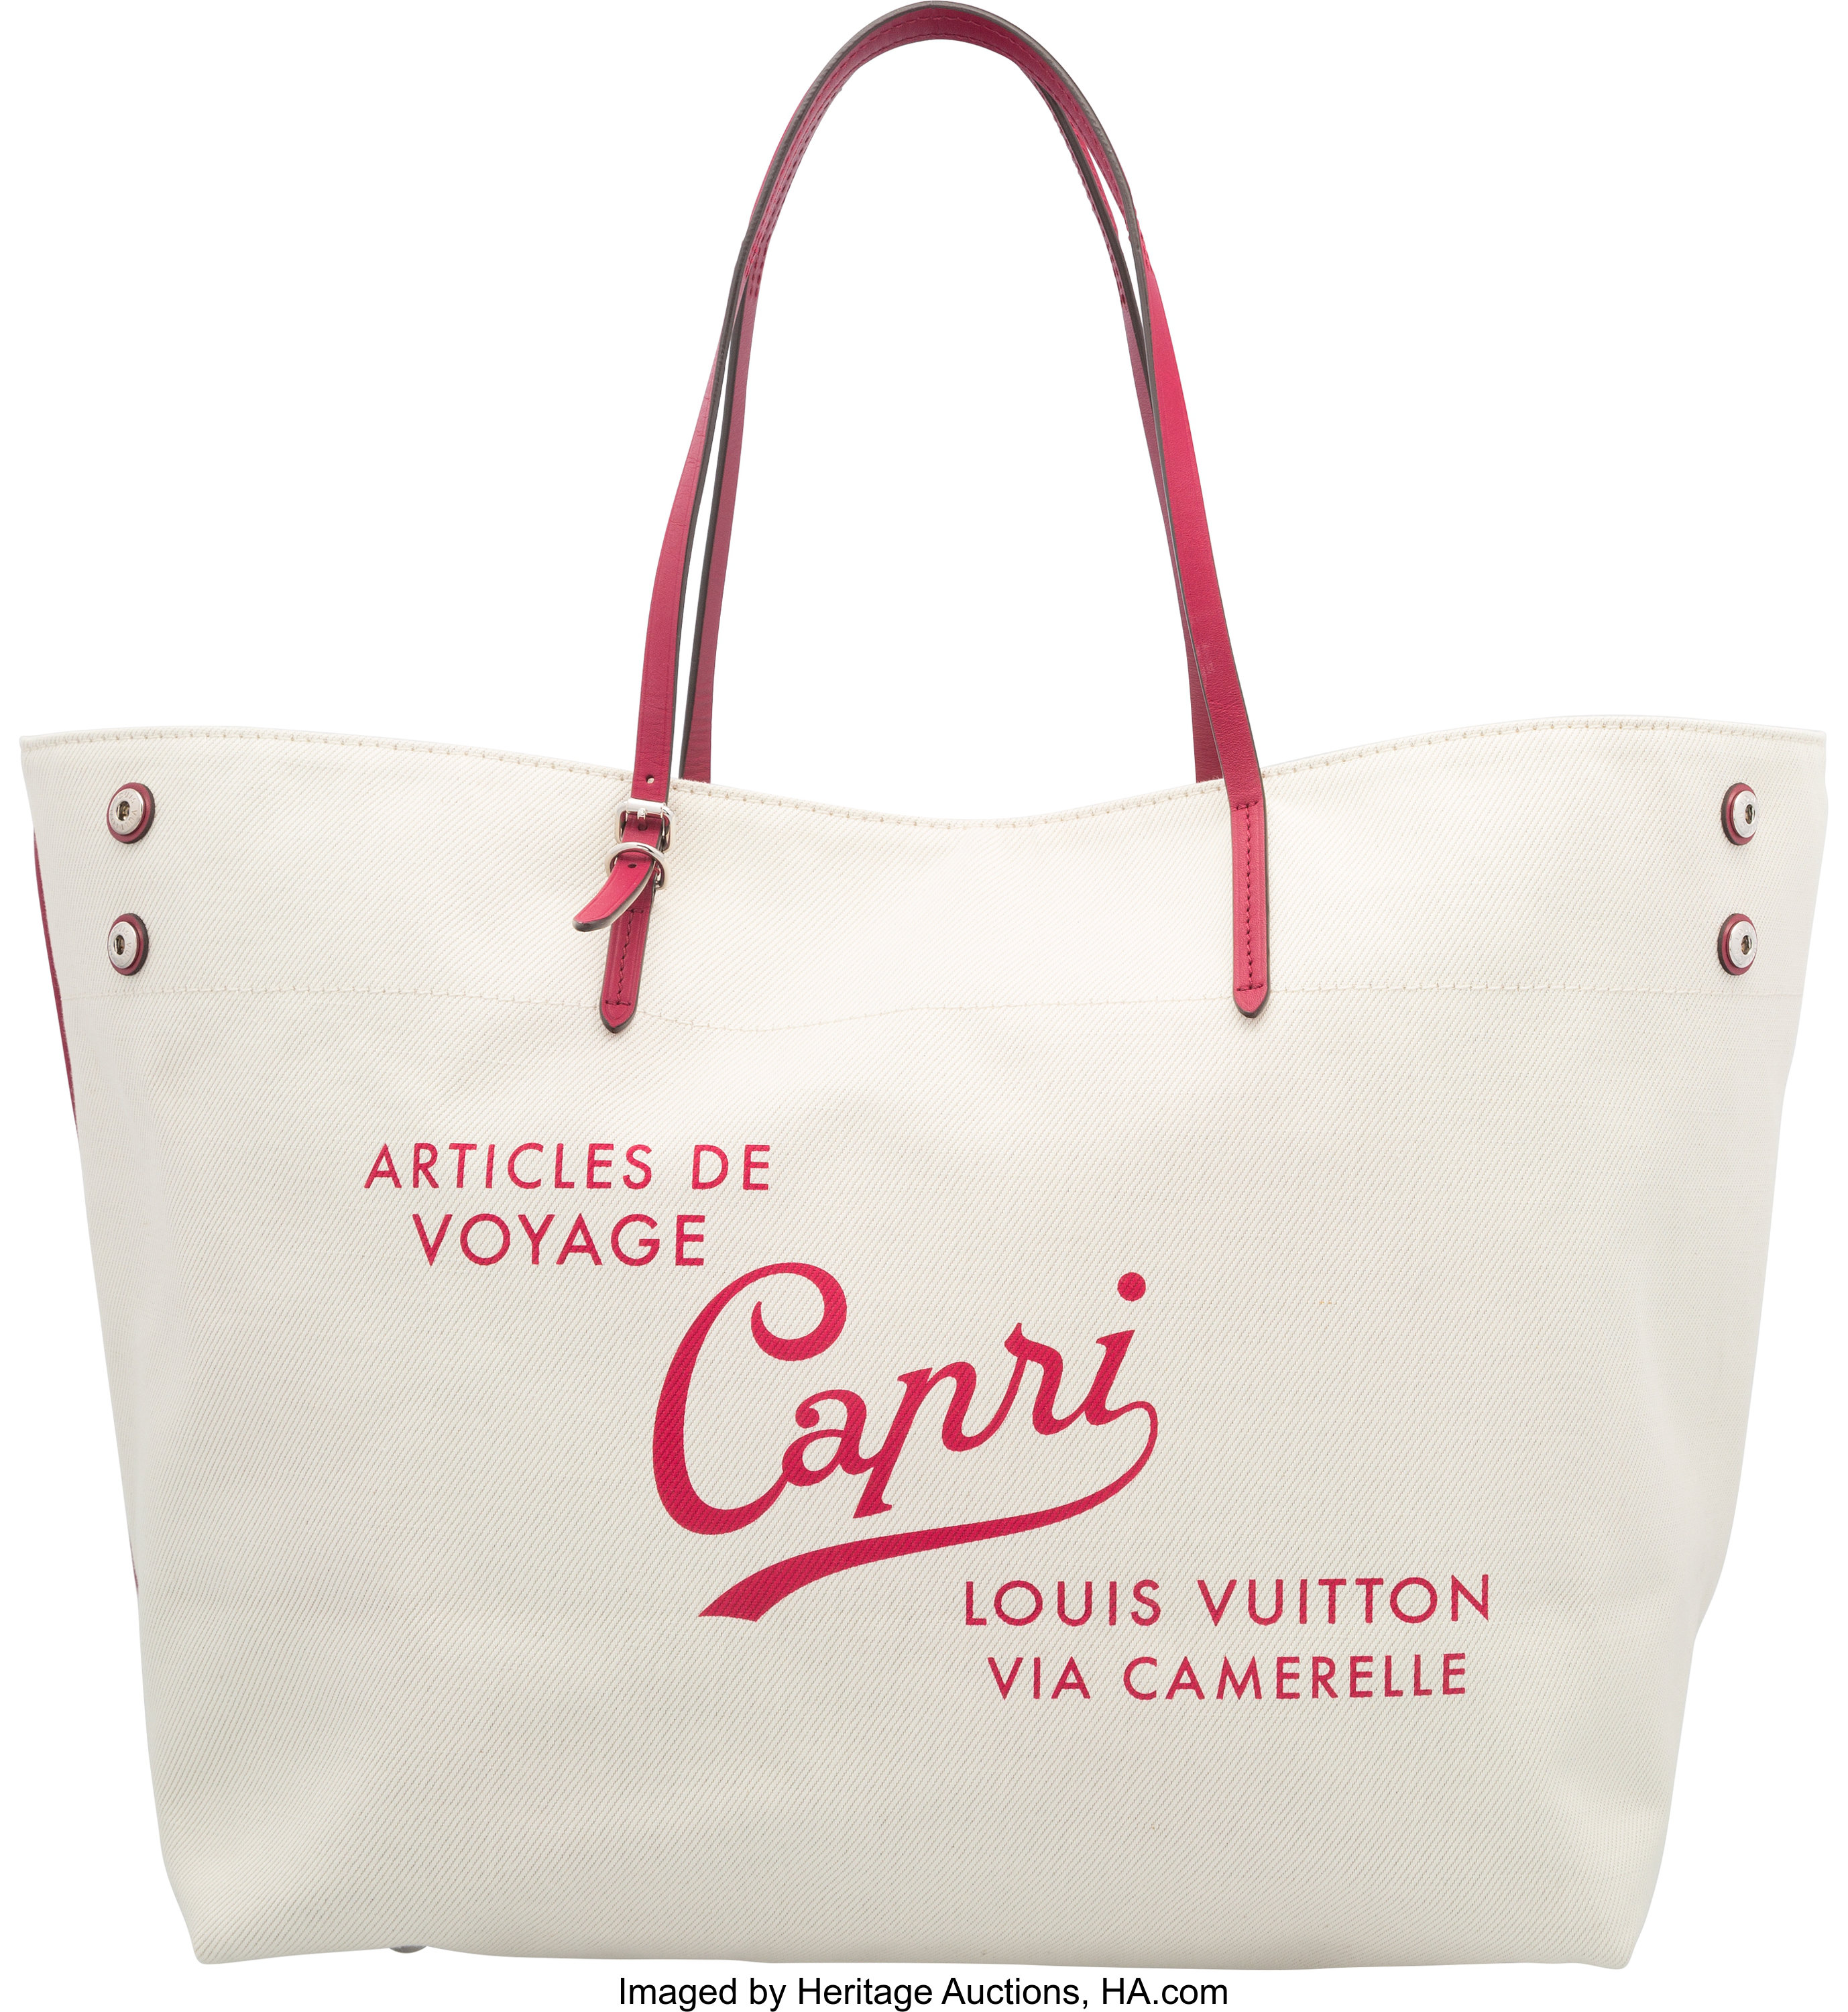 Louis Vuitton White & Red Canvas Capri Cabas Tote Bag. Excellent